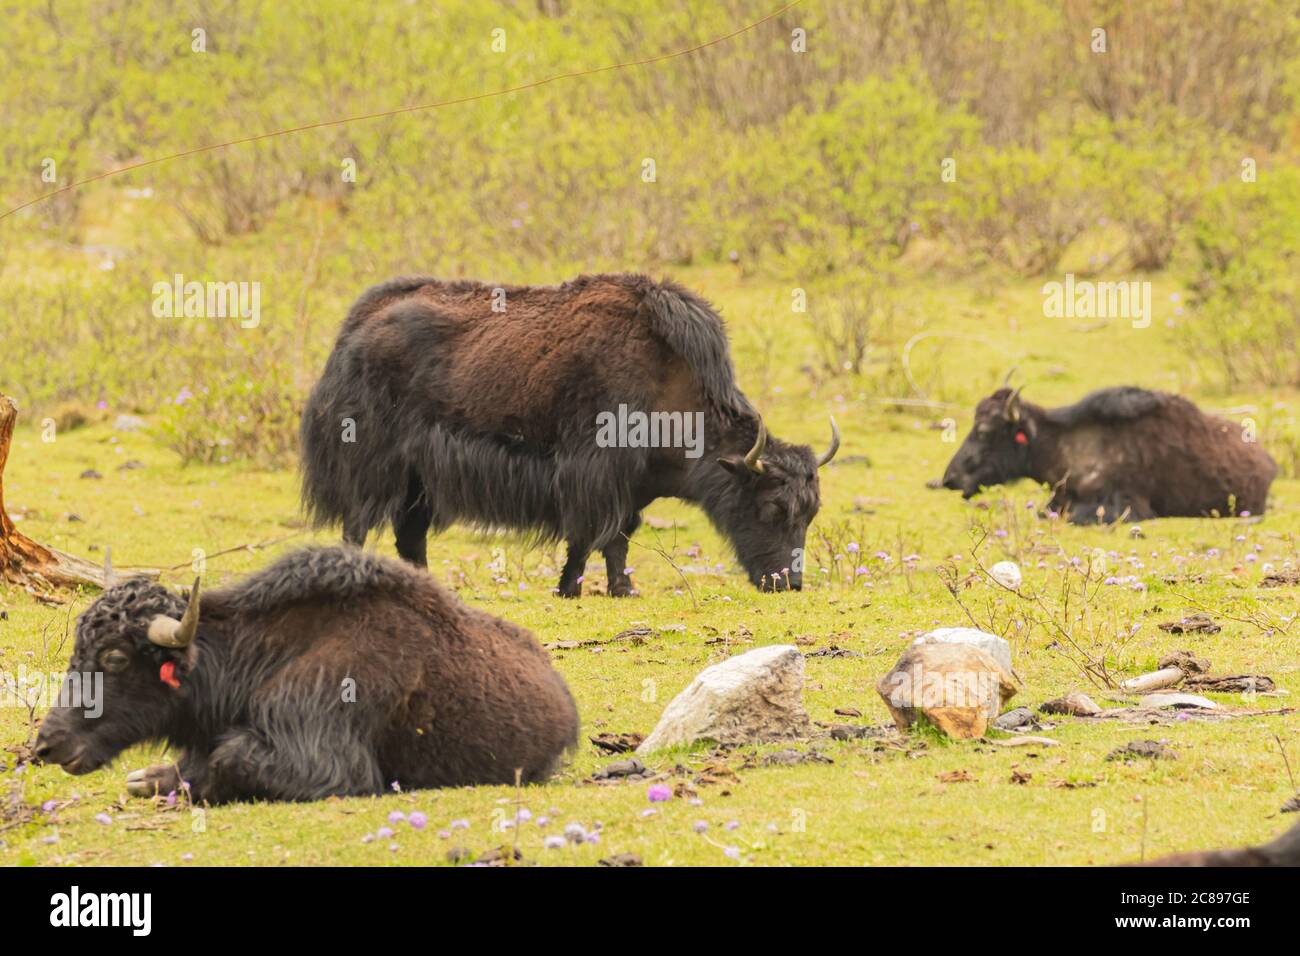 Immagine di lunghi acari bruni e neri dai capelli lunghi che si trovano nelle zone e nelle regioni più alte dell'Himalaya e degli altipiani tibetani. Foto Stock